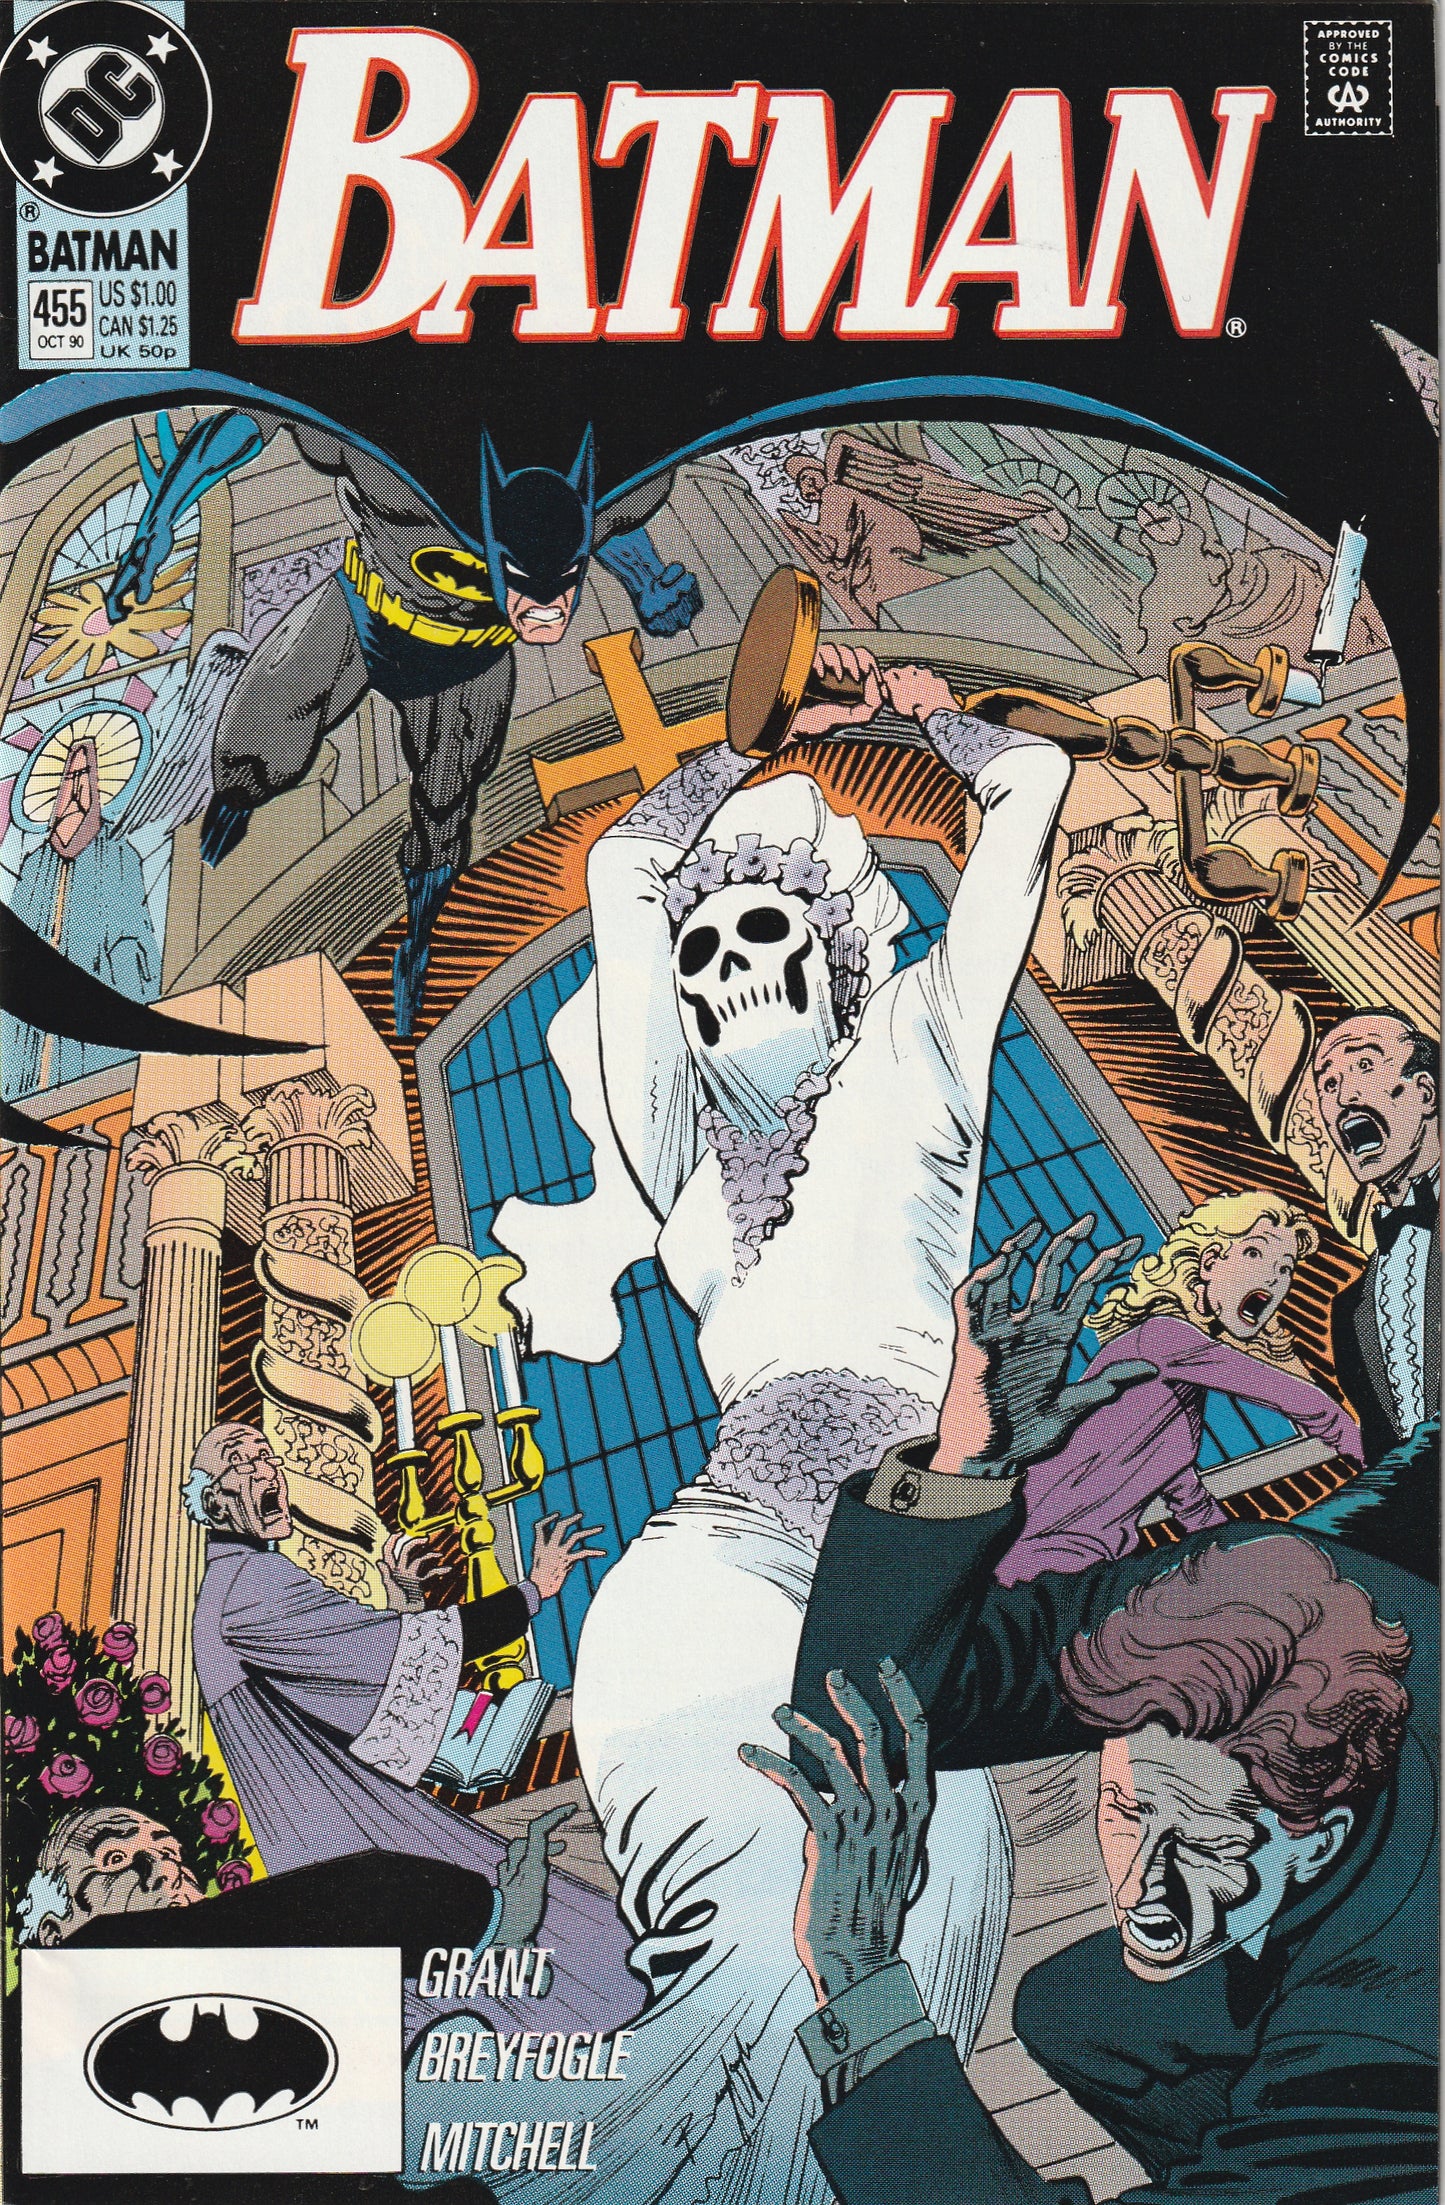 Batman #455 (1990) - Alan Grant scripts begin